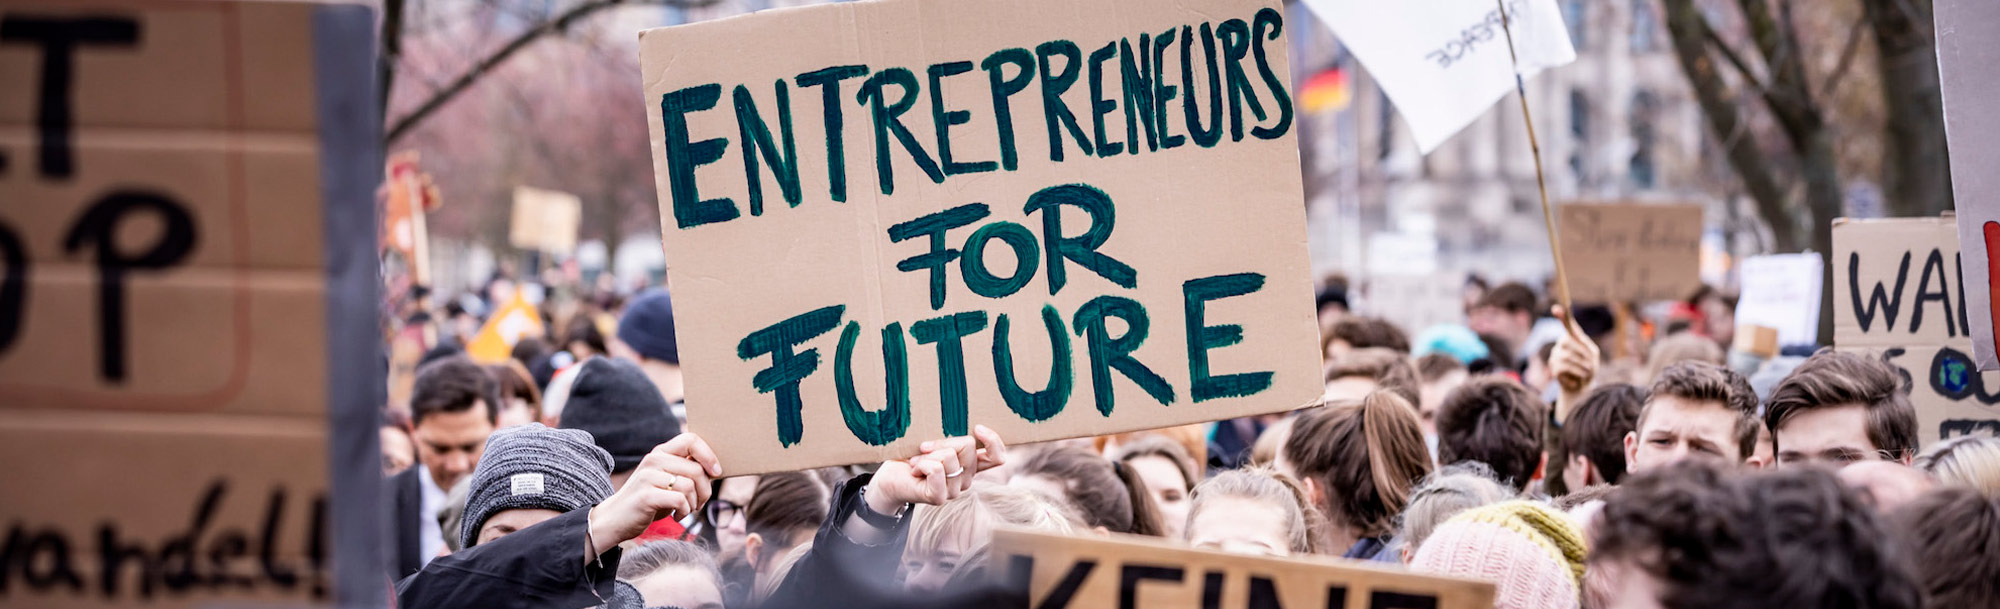 Entrepreneurs For Future